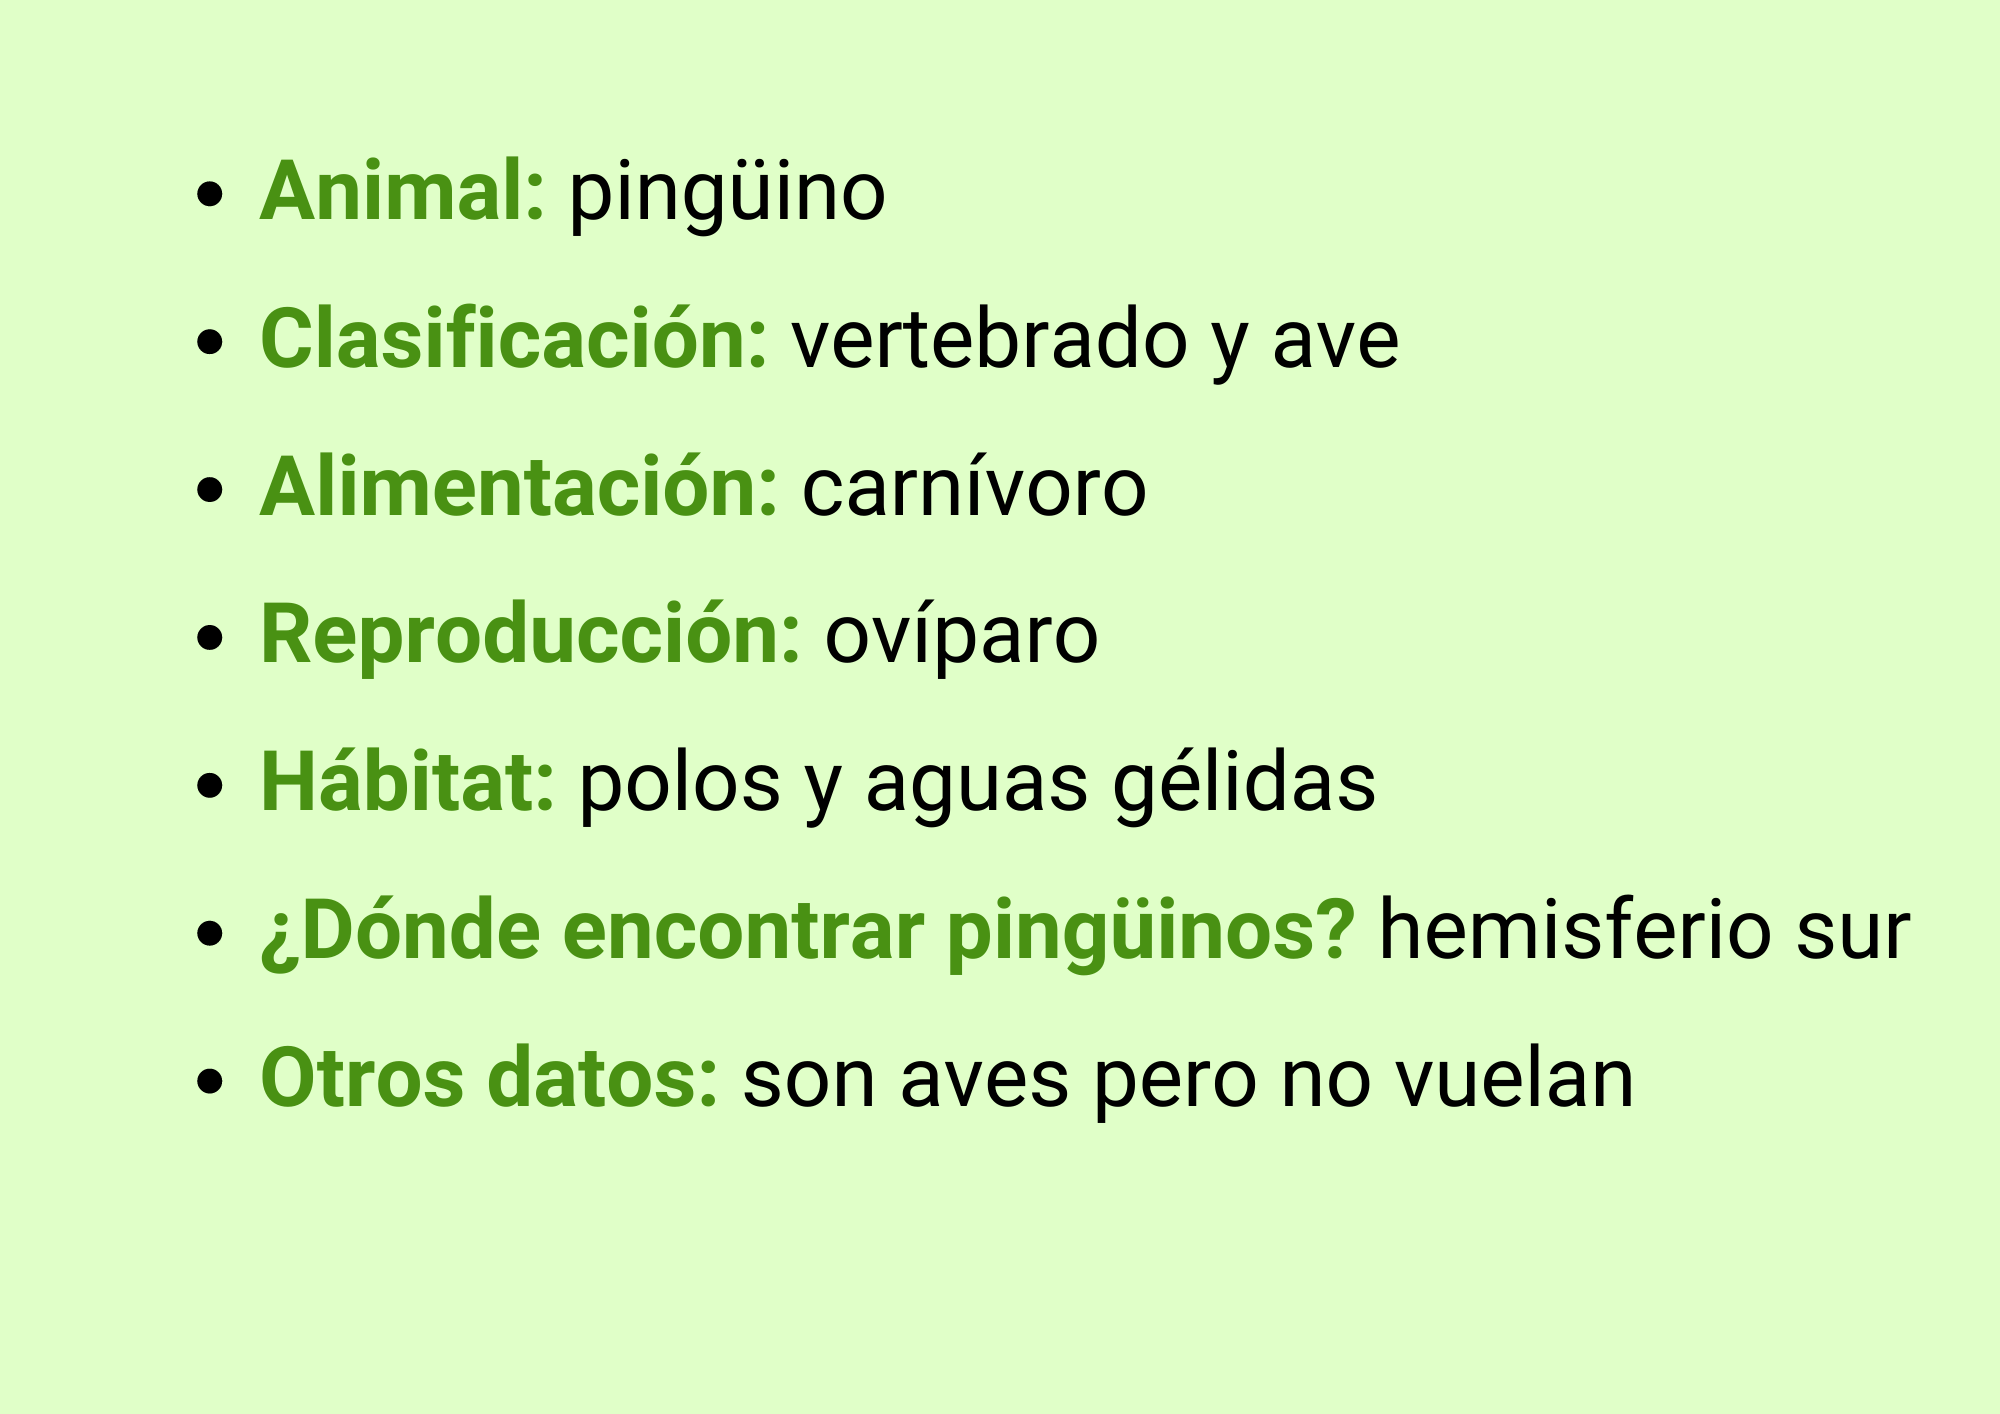 Animal: Pingüino, Clasificación: vertebrado y ave, Alimentación: carnívoro